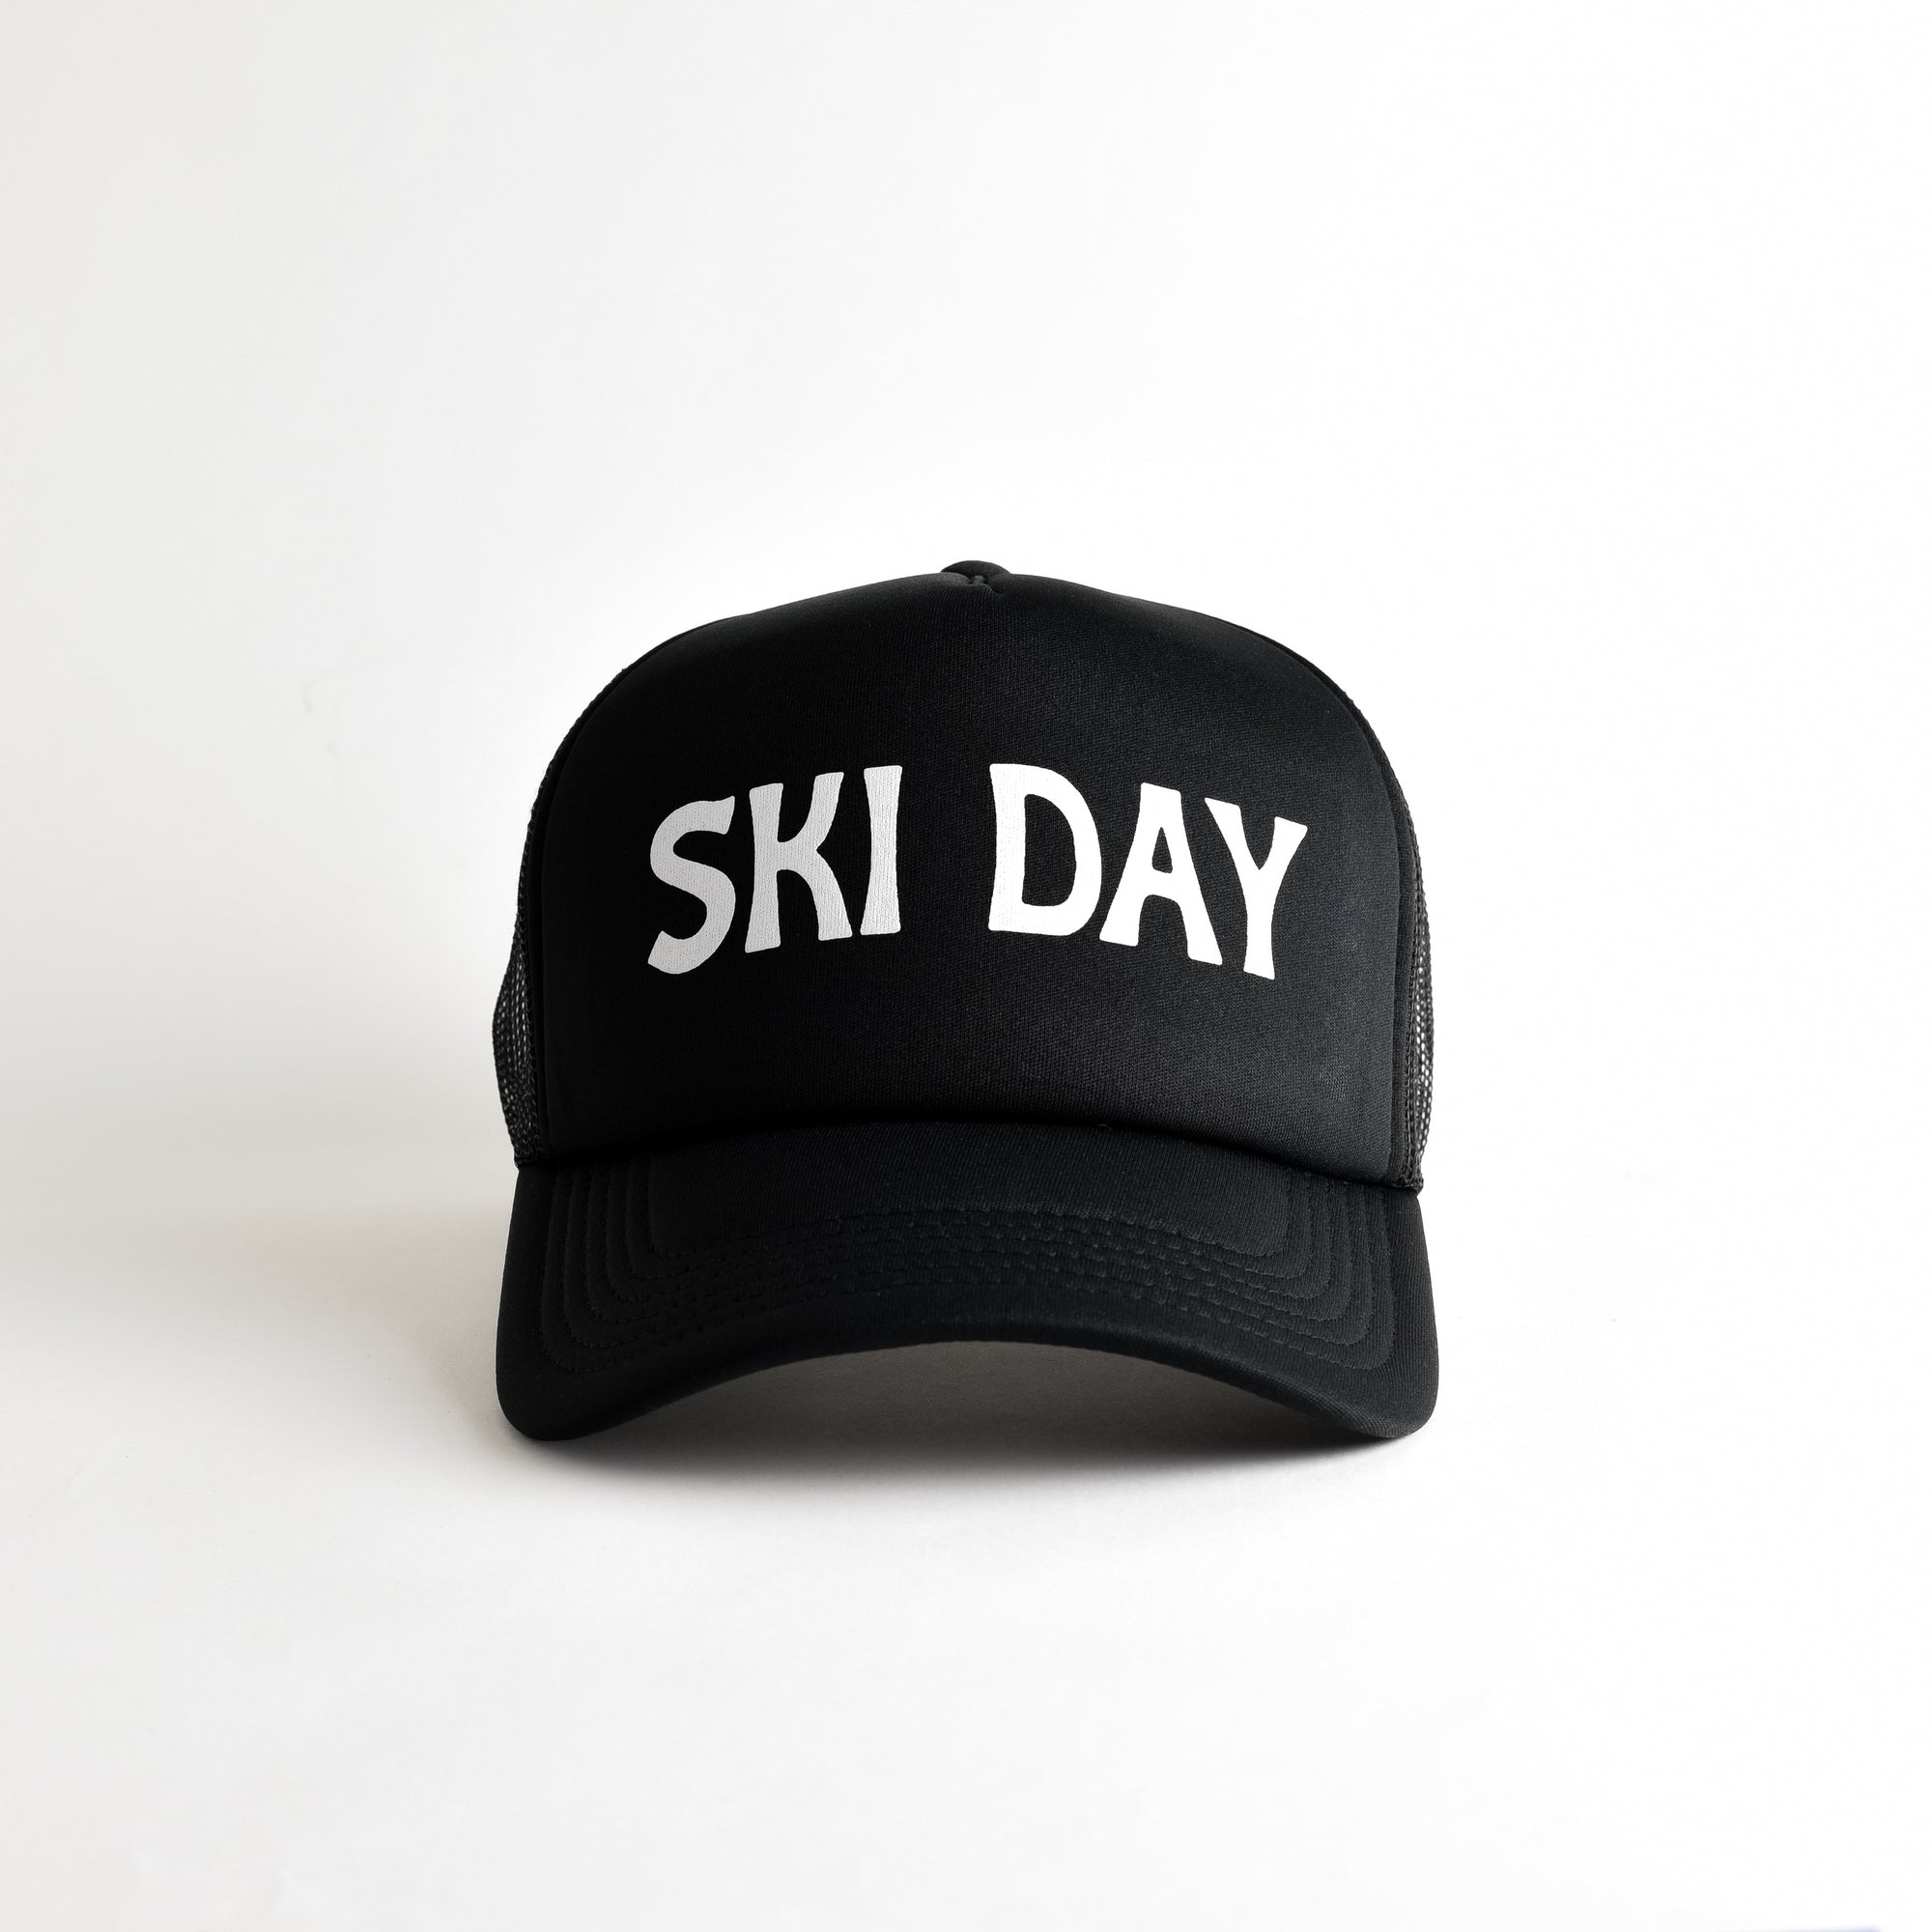 Ski Day Recycled Trucker Hat - black